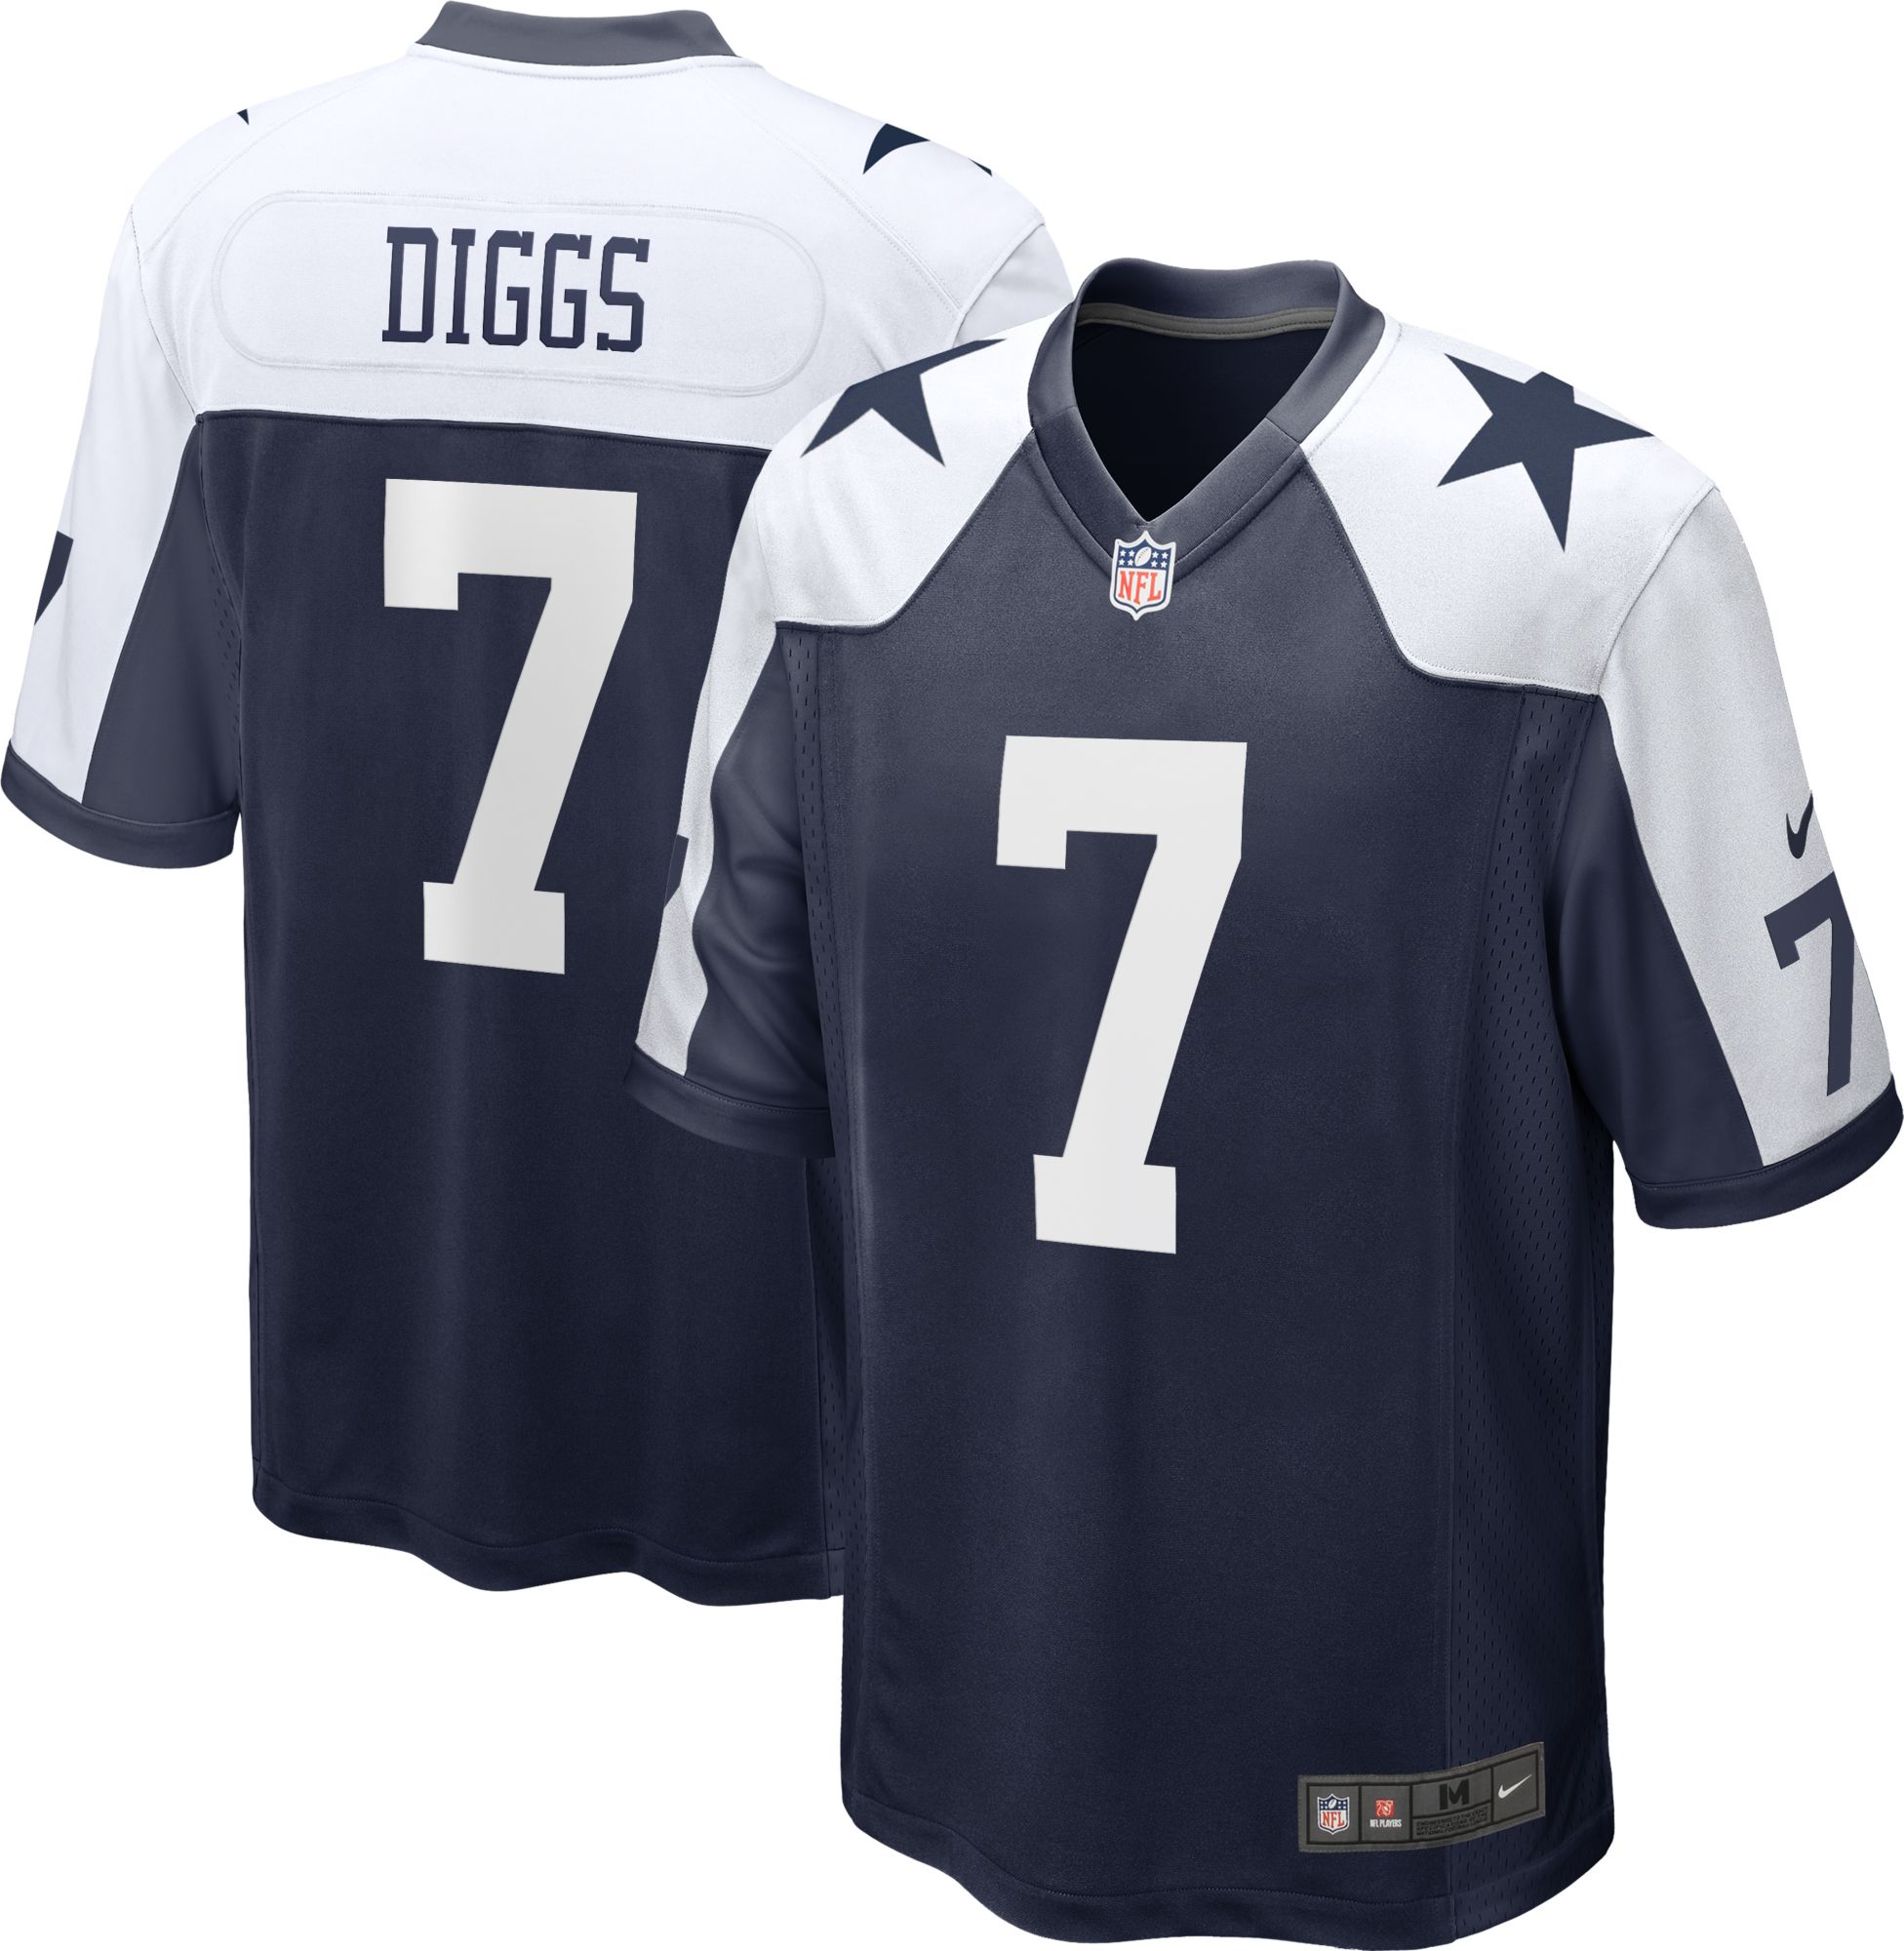 Cowboys Trevon Diggs jersey